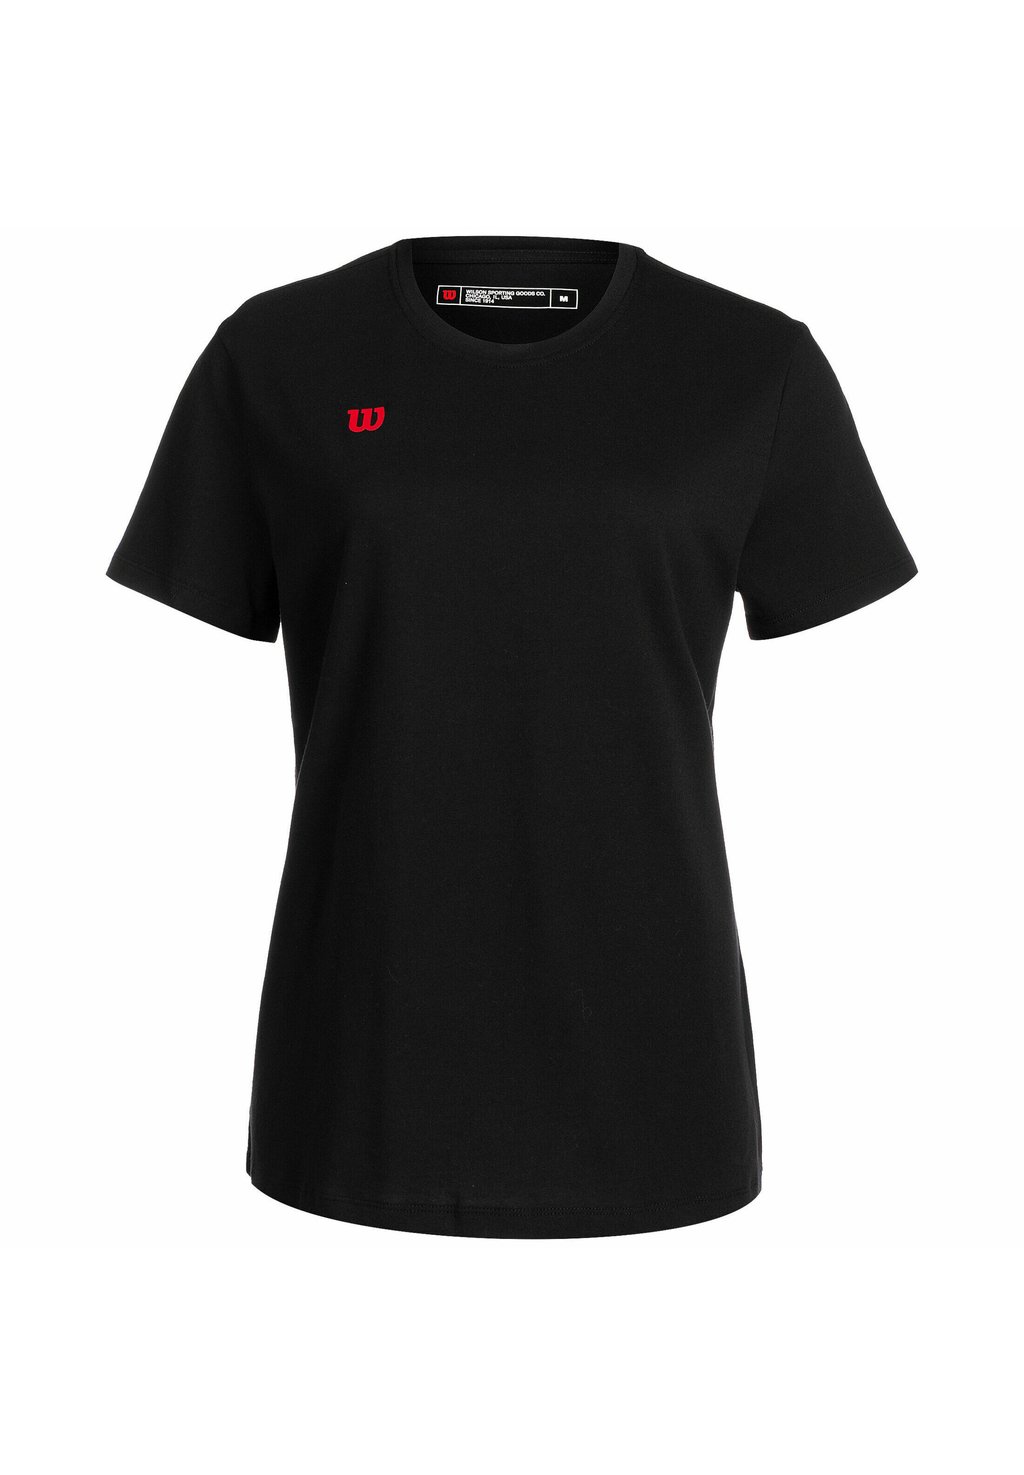 Базовая футболка Wilson, черный базовая намотка wilson sublime grip черный размер без размера